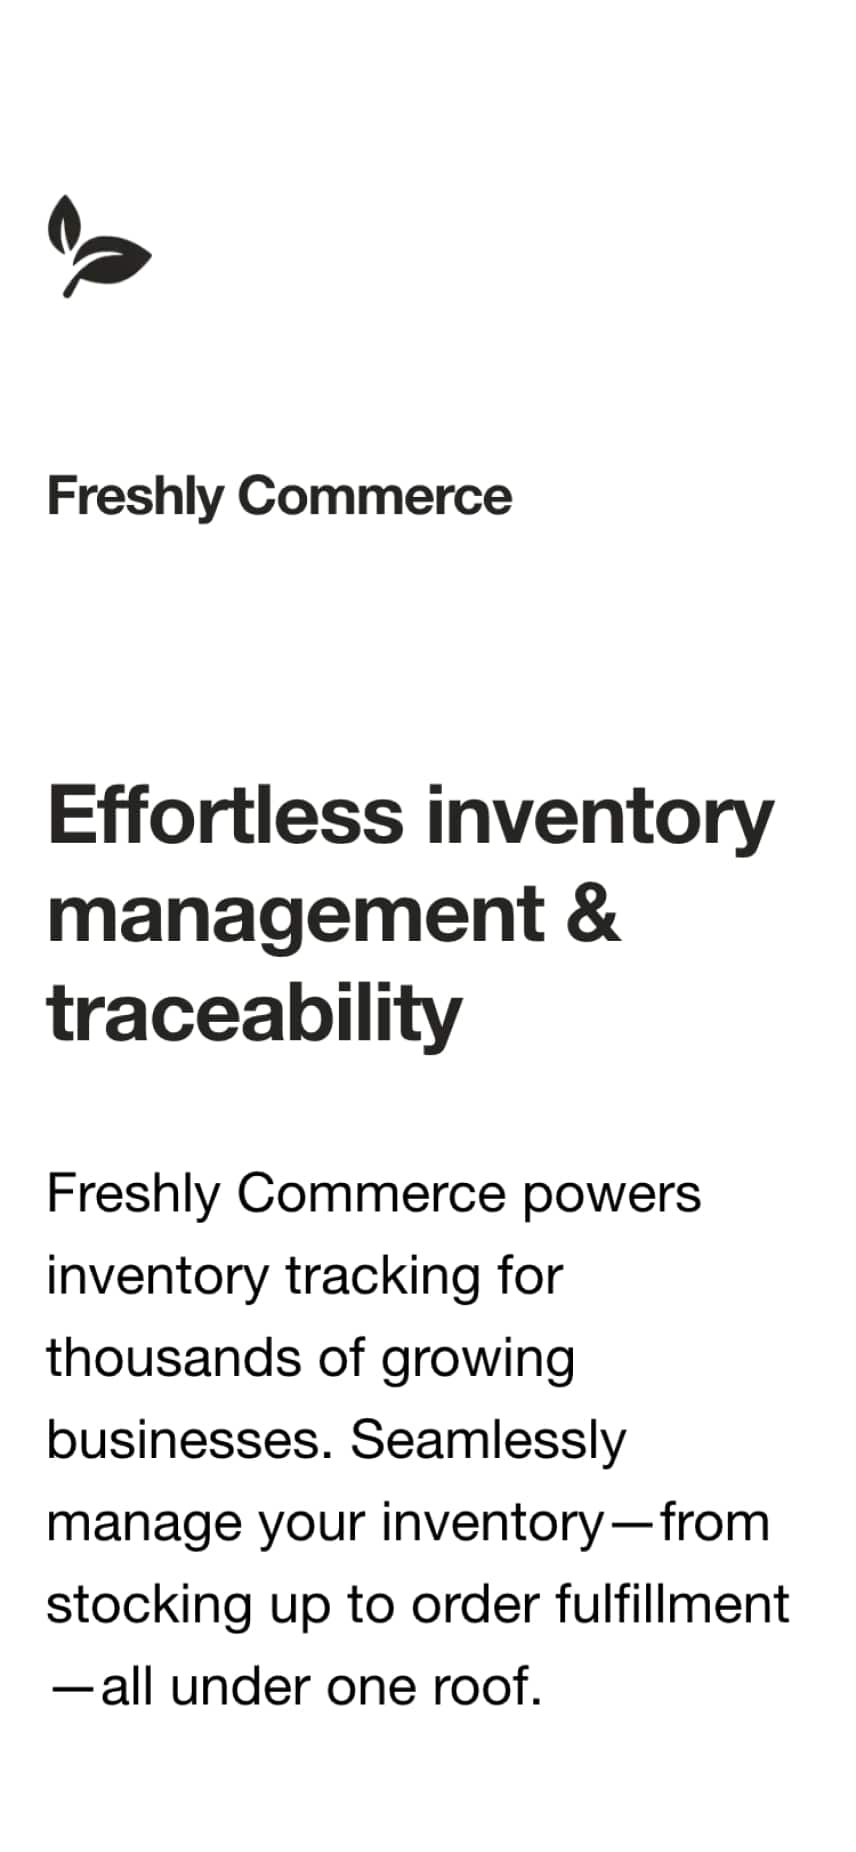 Freshly Commerce